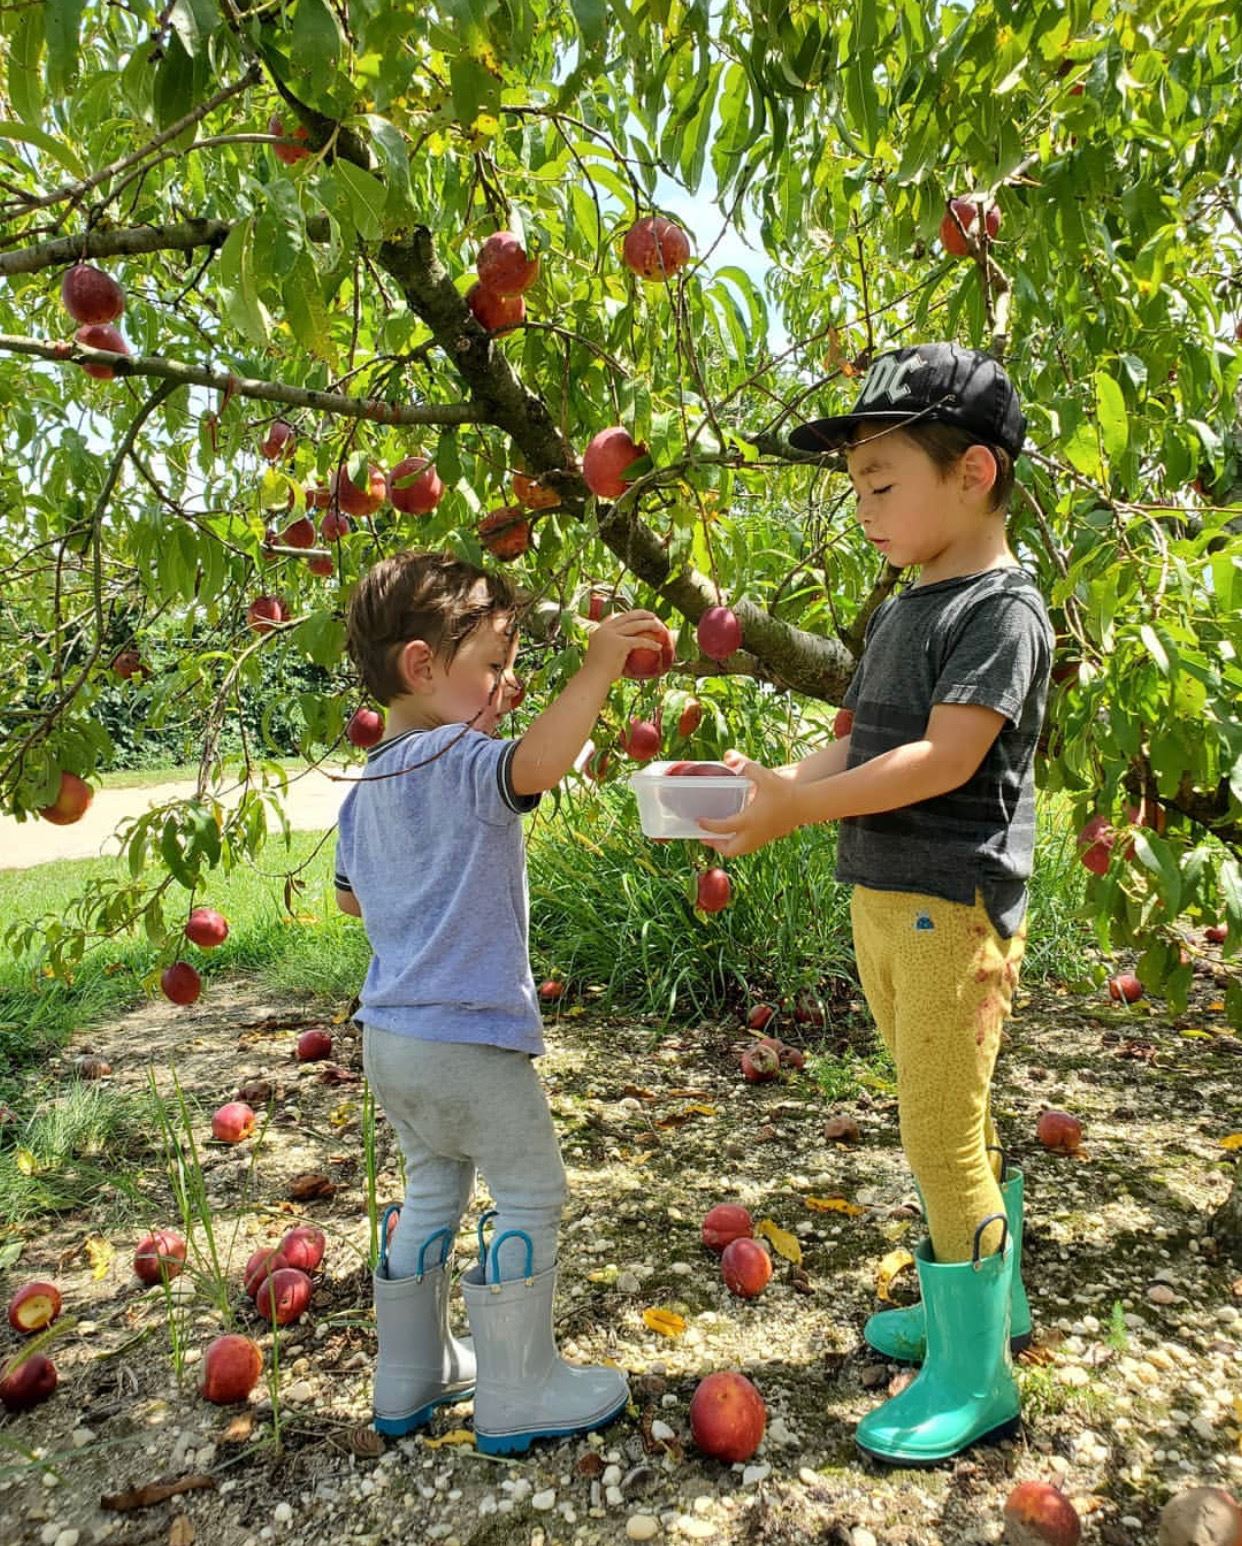 nj mom apple picking in NJ season apple farm new jersey